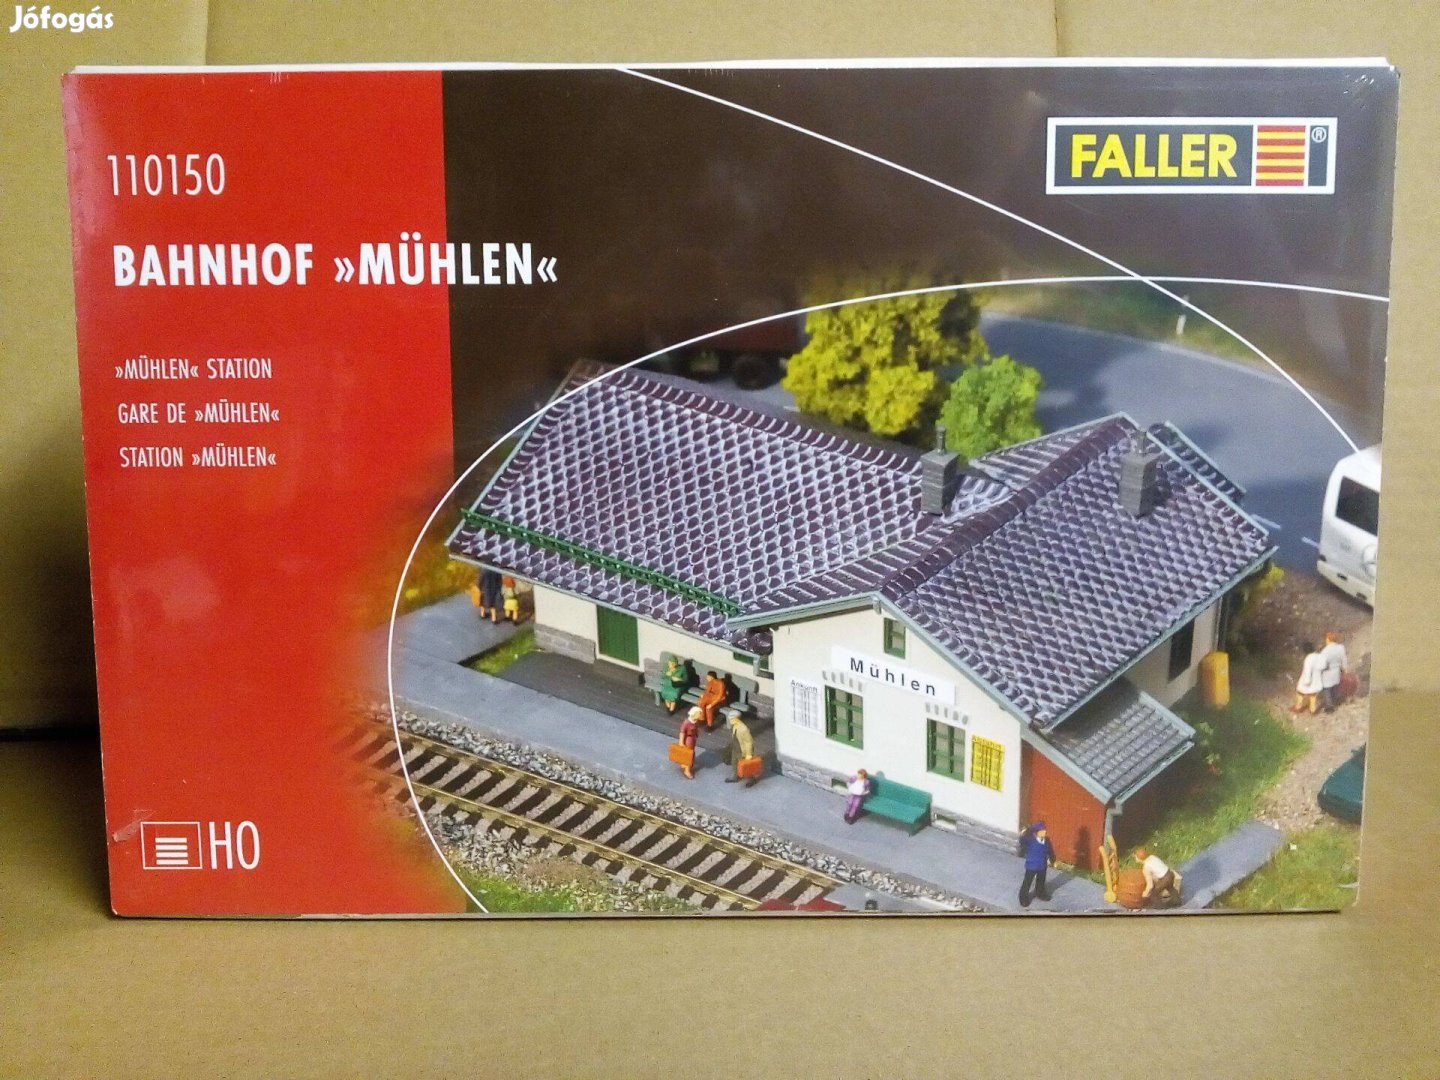 Faller Mühlen állomás modell épület terepasztalra H0